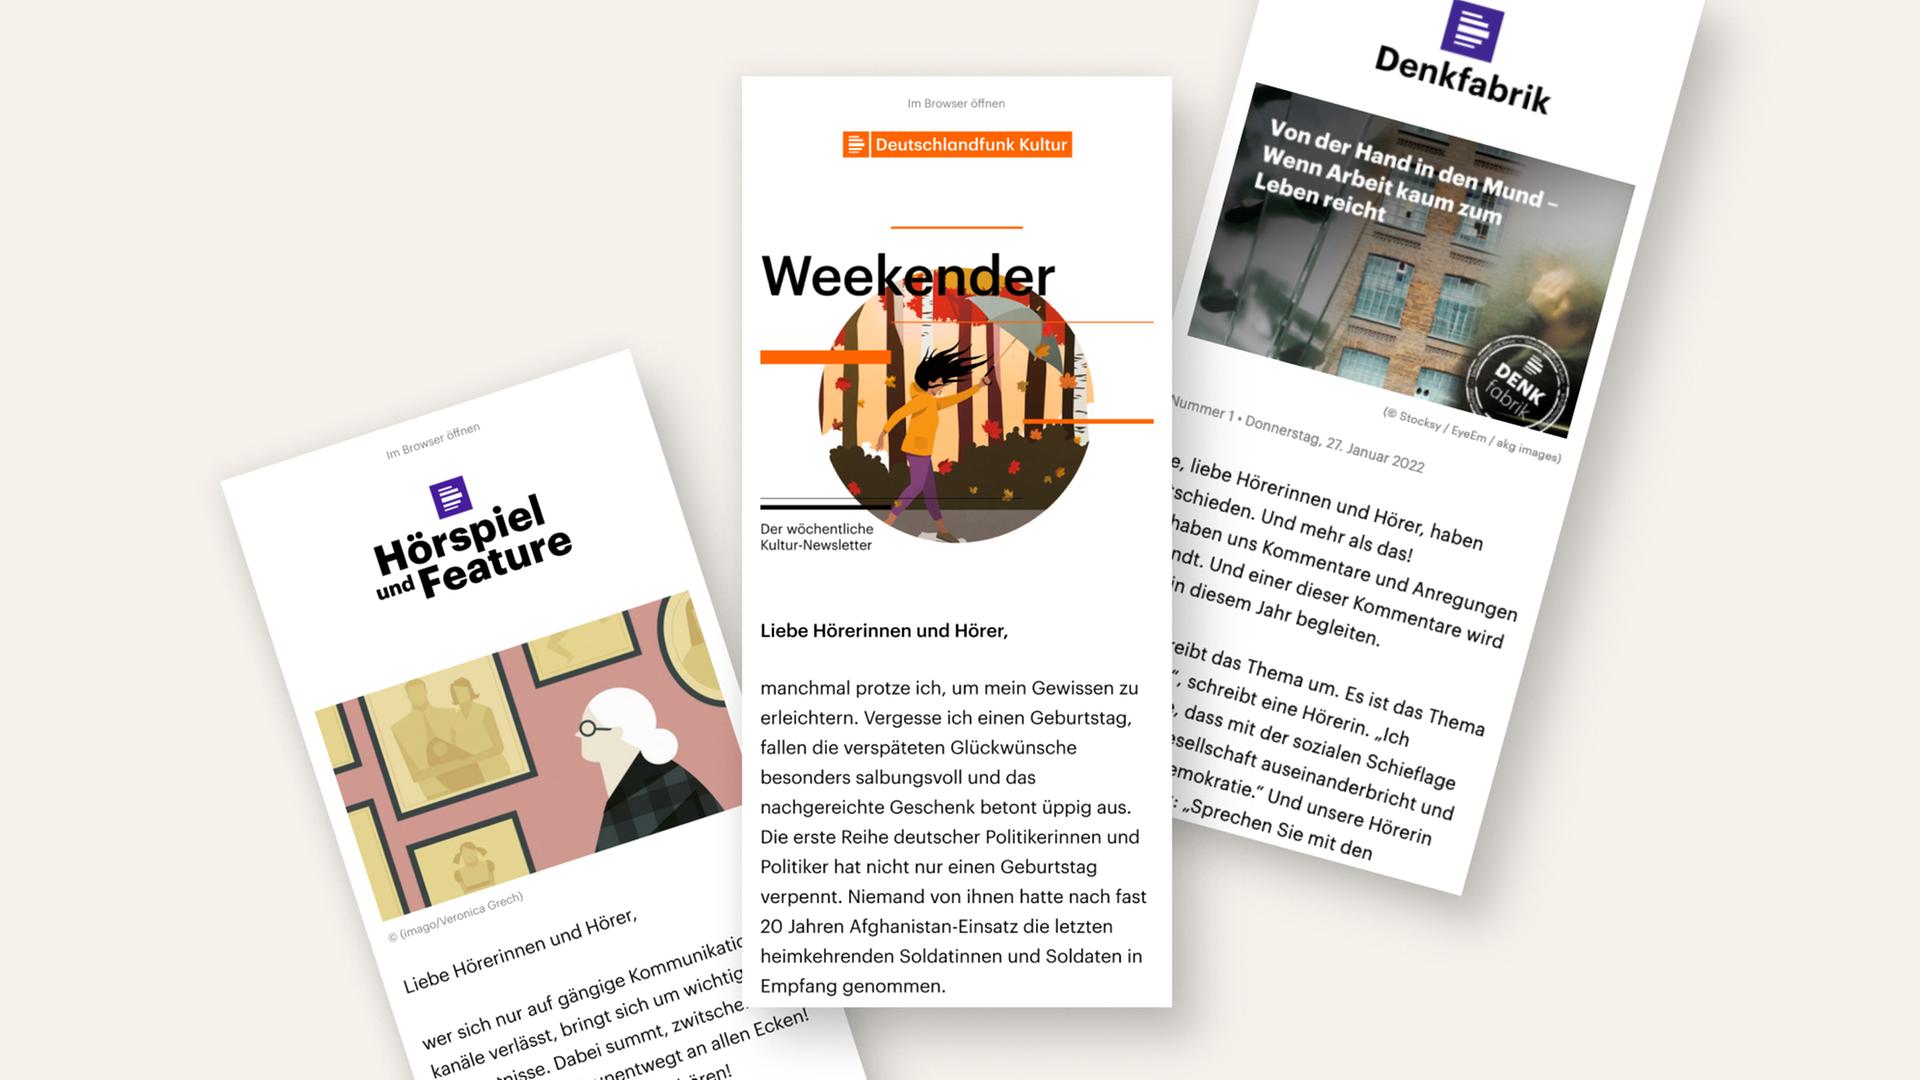 Die Newsletter von Deutschlandfunk und Deutschlandfunk Kultur: Weekender, Denkfabrik und Hörspiel + Feature